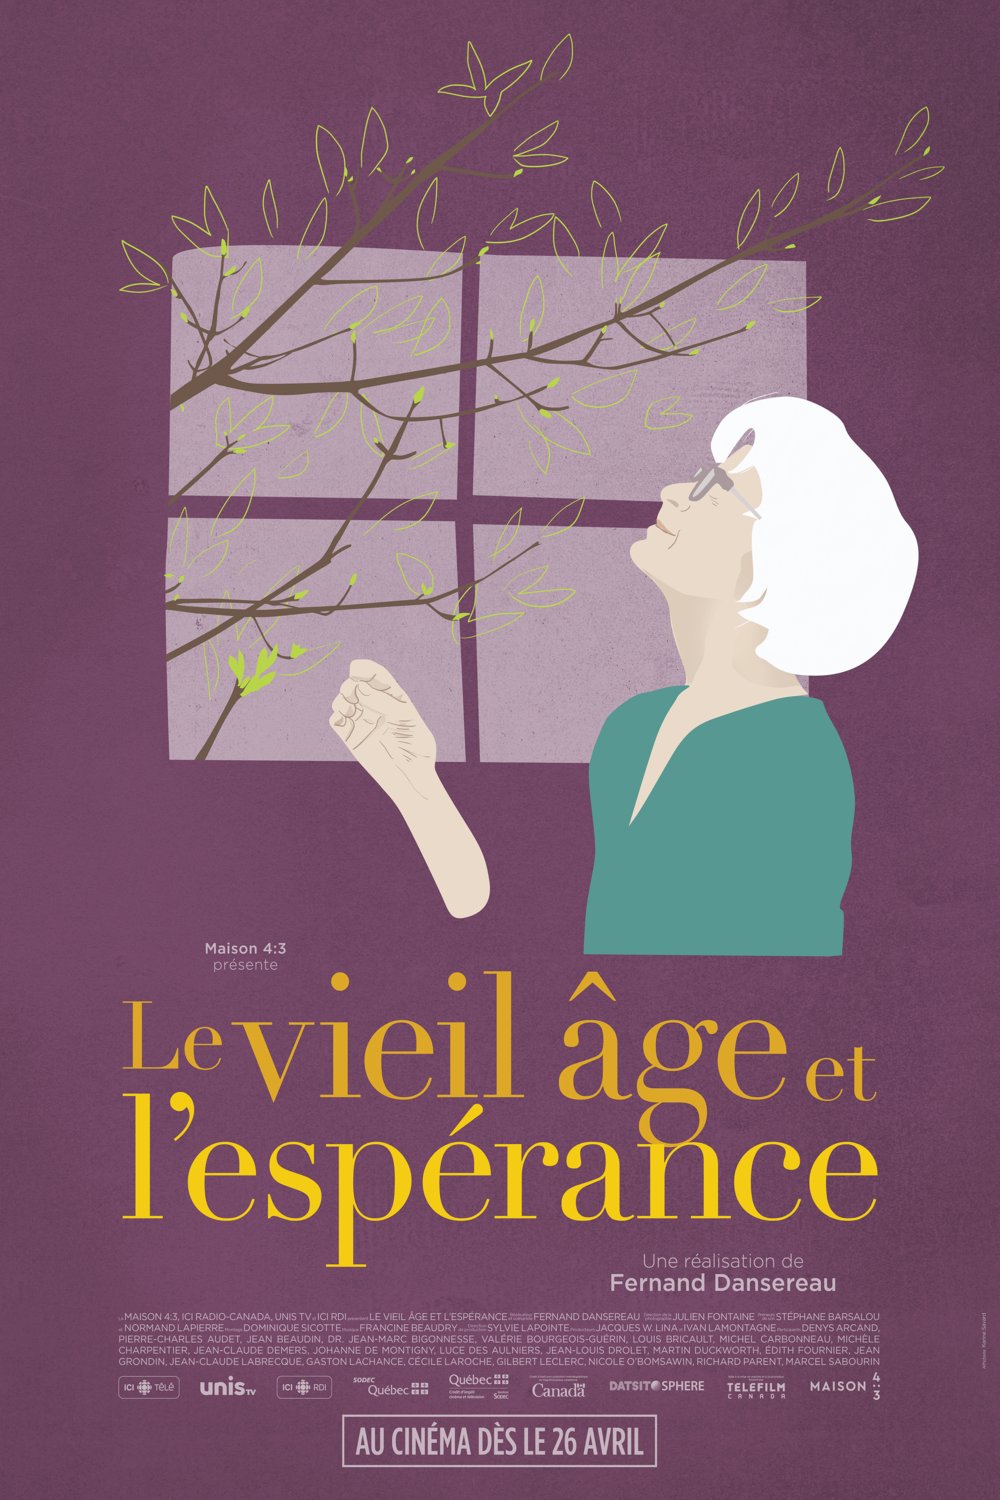 L'affiche du film Le vieil âge et l'espérance